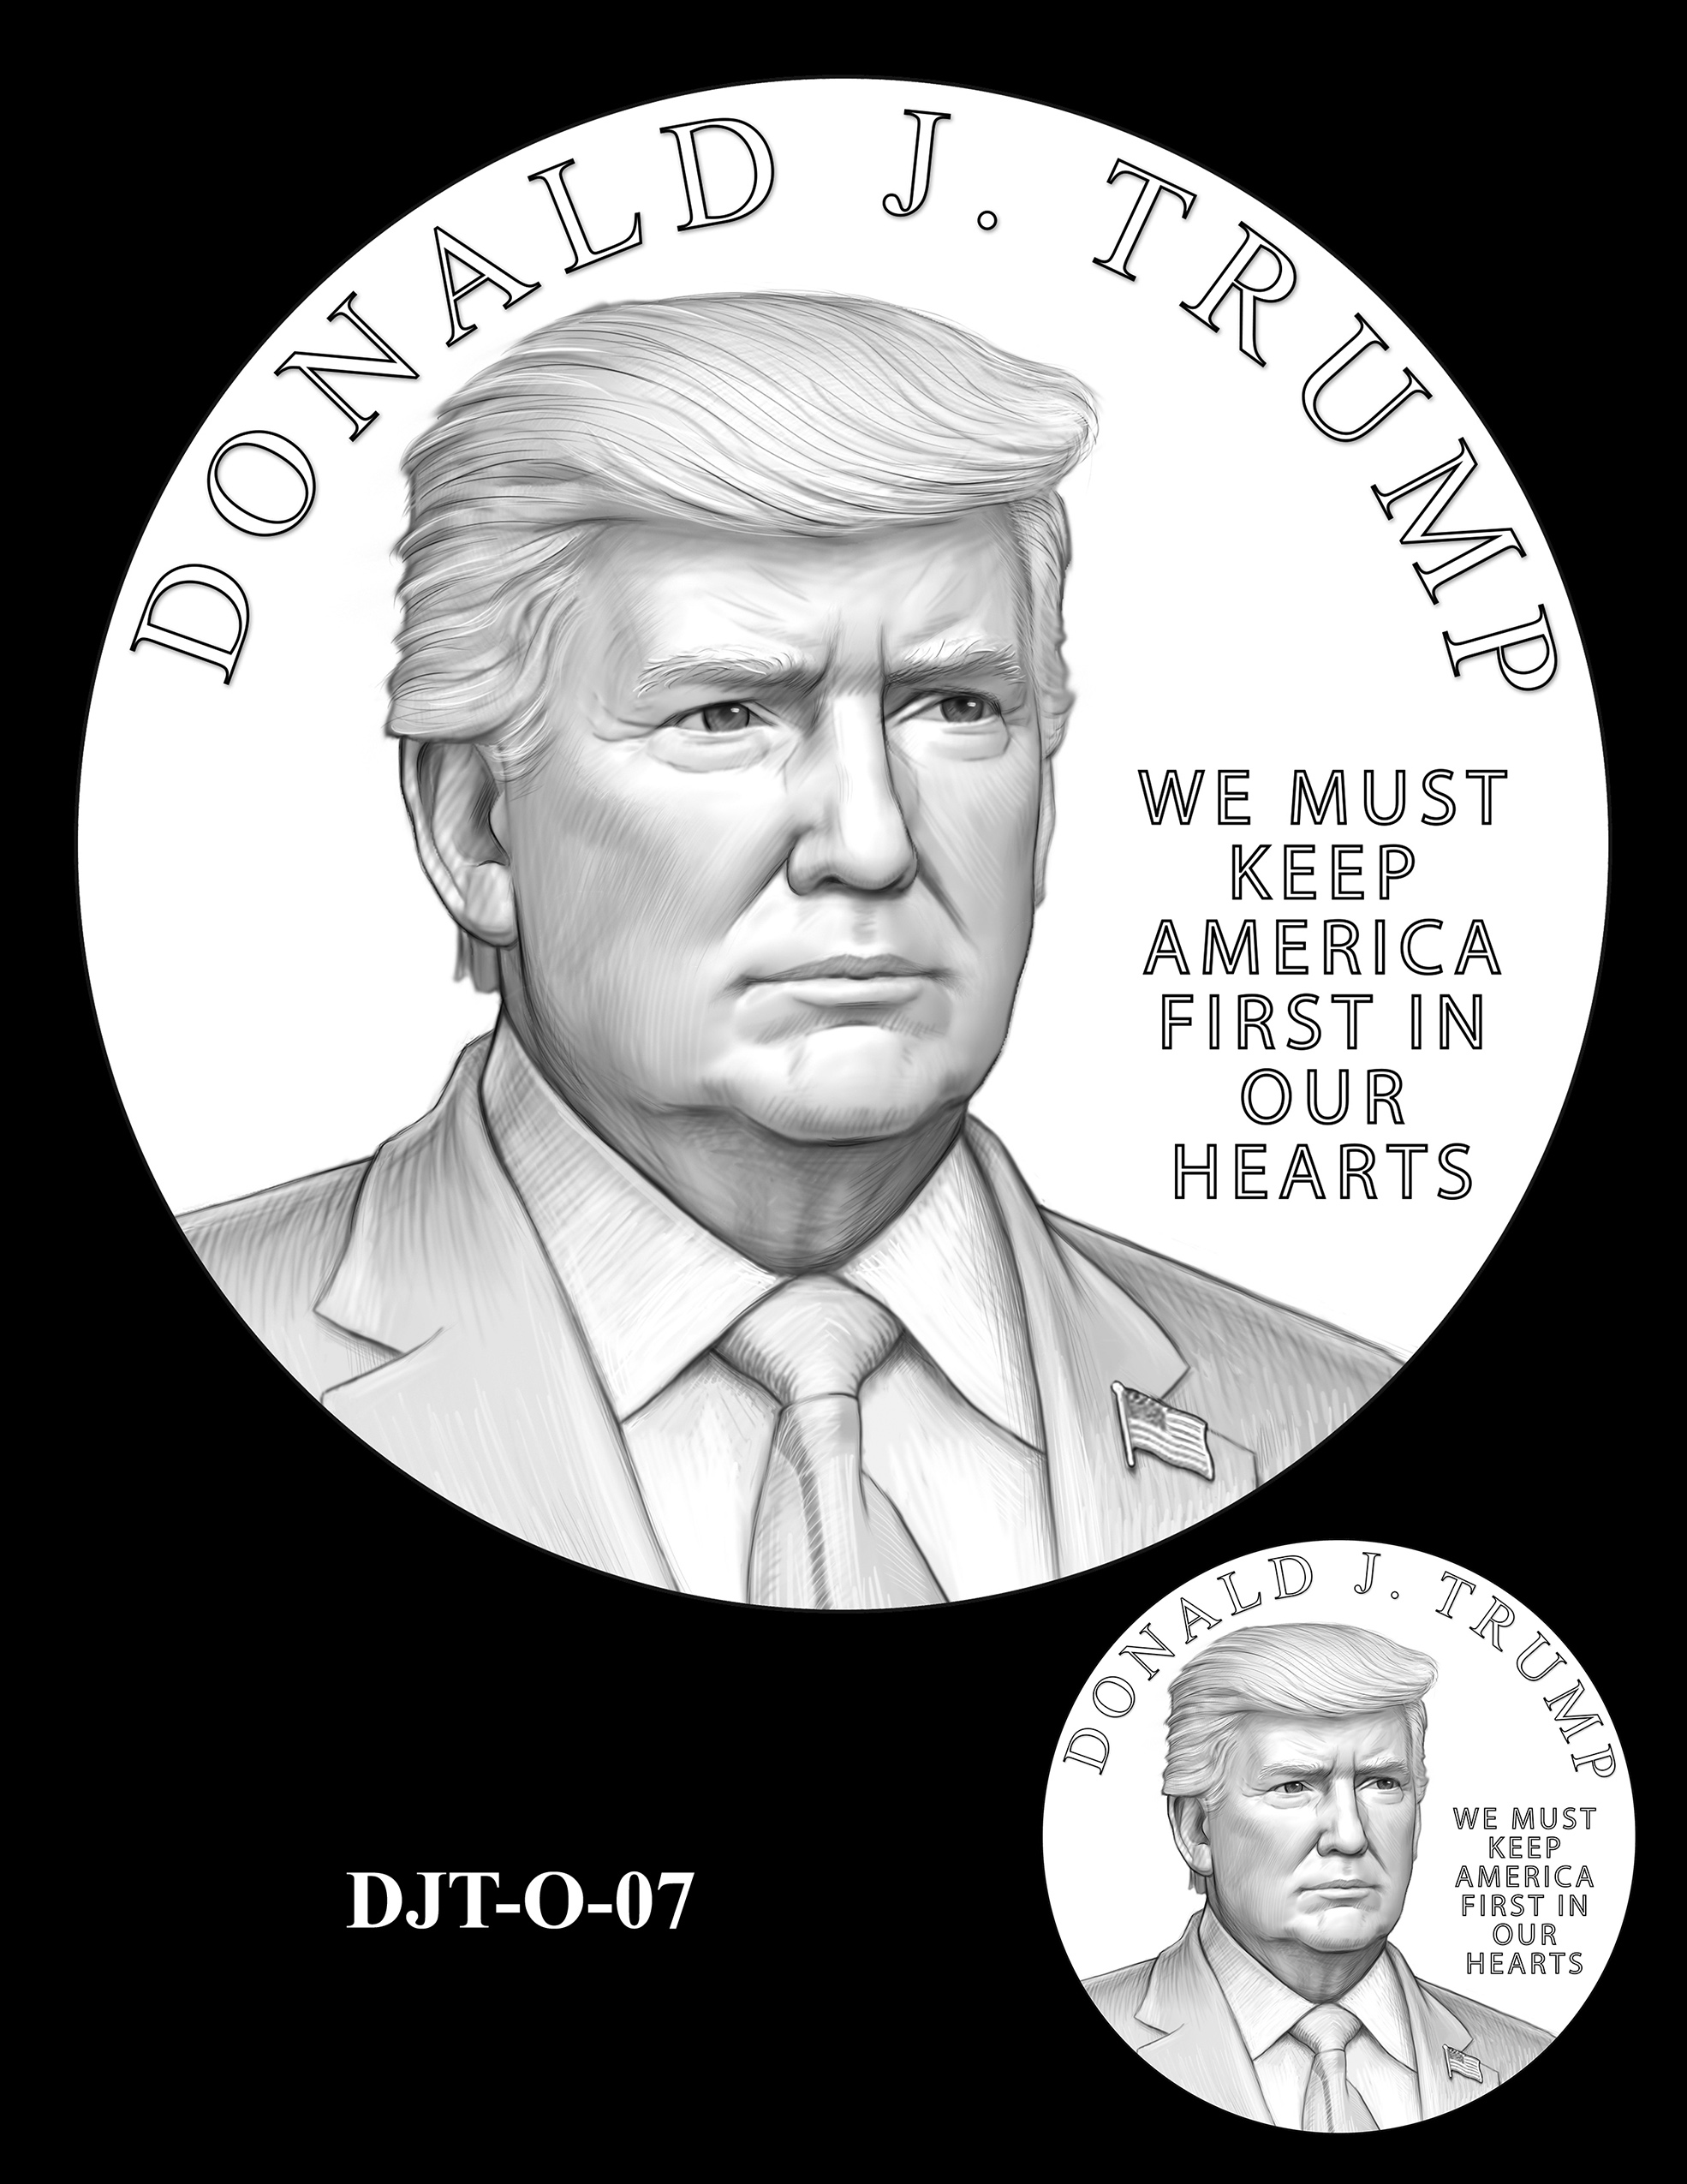 DJT-O-07 -- Donald J. Trump Presidential Medal